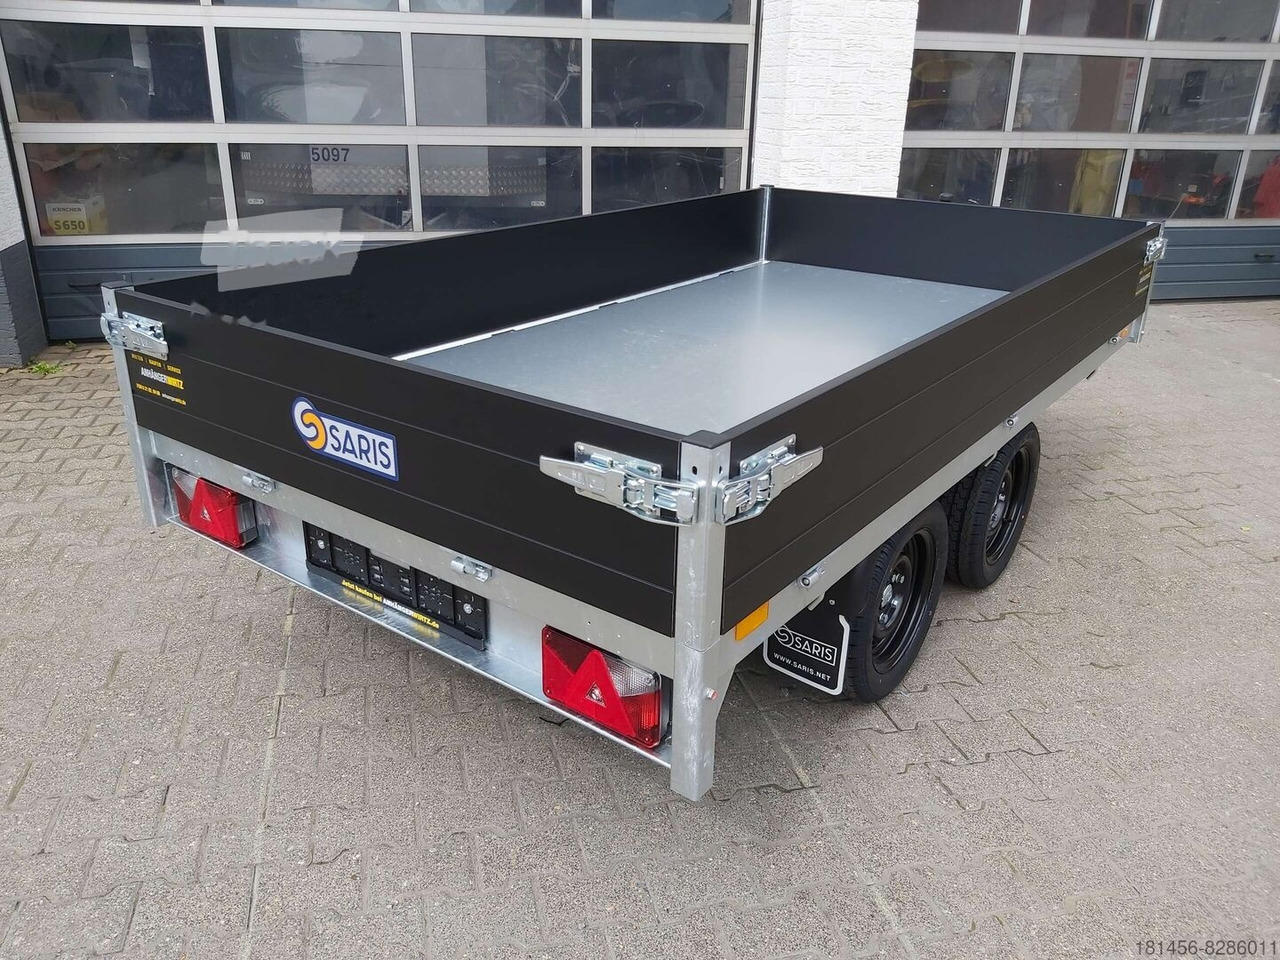 Saris Heckkipper K1 276 150 2700kg elektro direkt verfügbar jetzt kaufen - Tipper trailer: picture 4